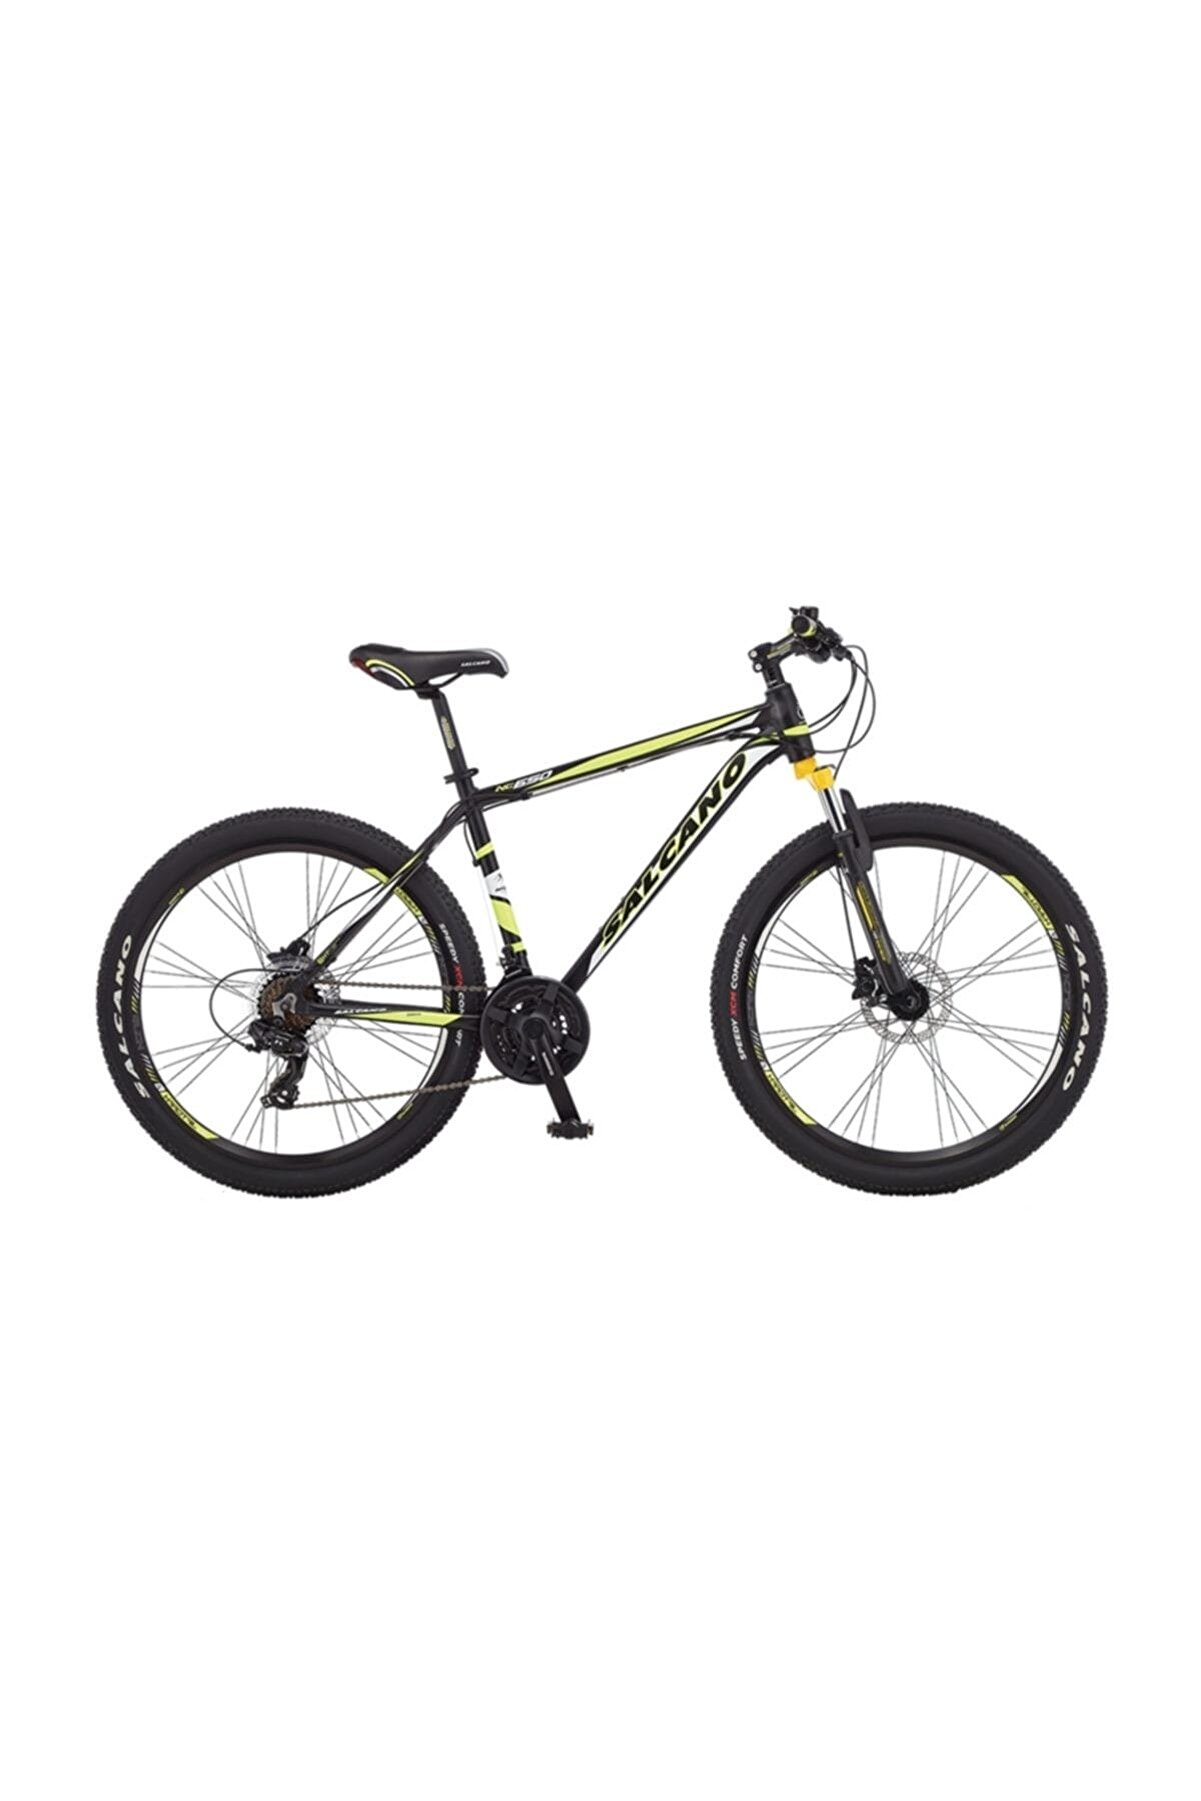 Salcano NG 650 HD 21 Vites 26 Jant Bisiklet C44 18 inç Mat Siyah Turuncu Beyaz